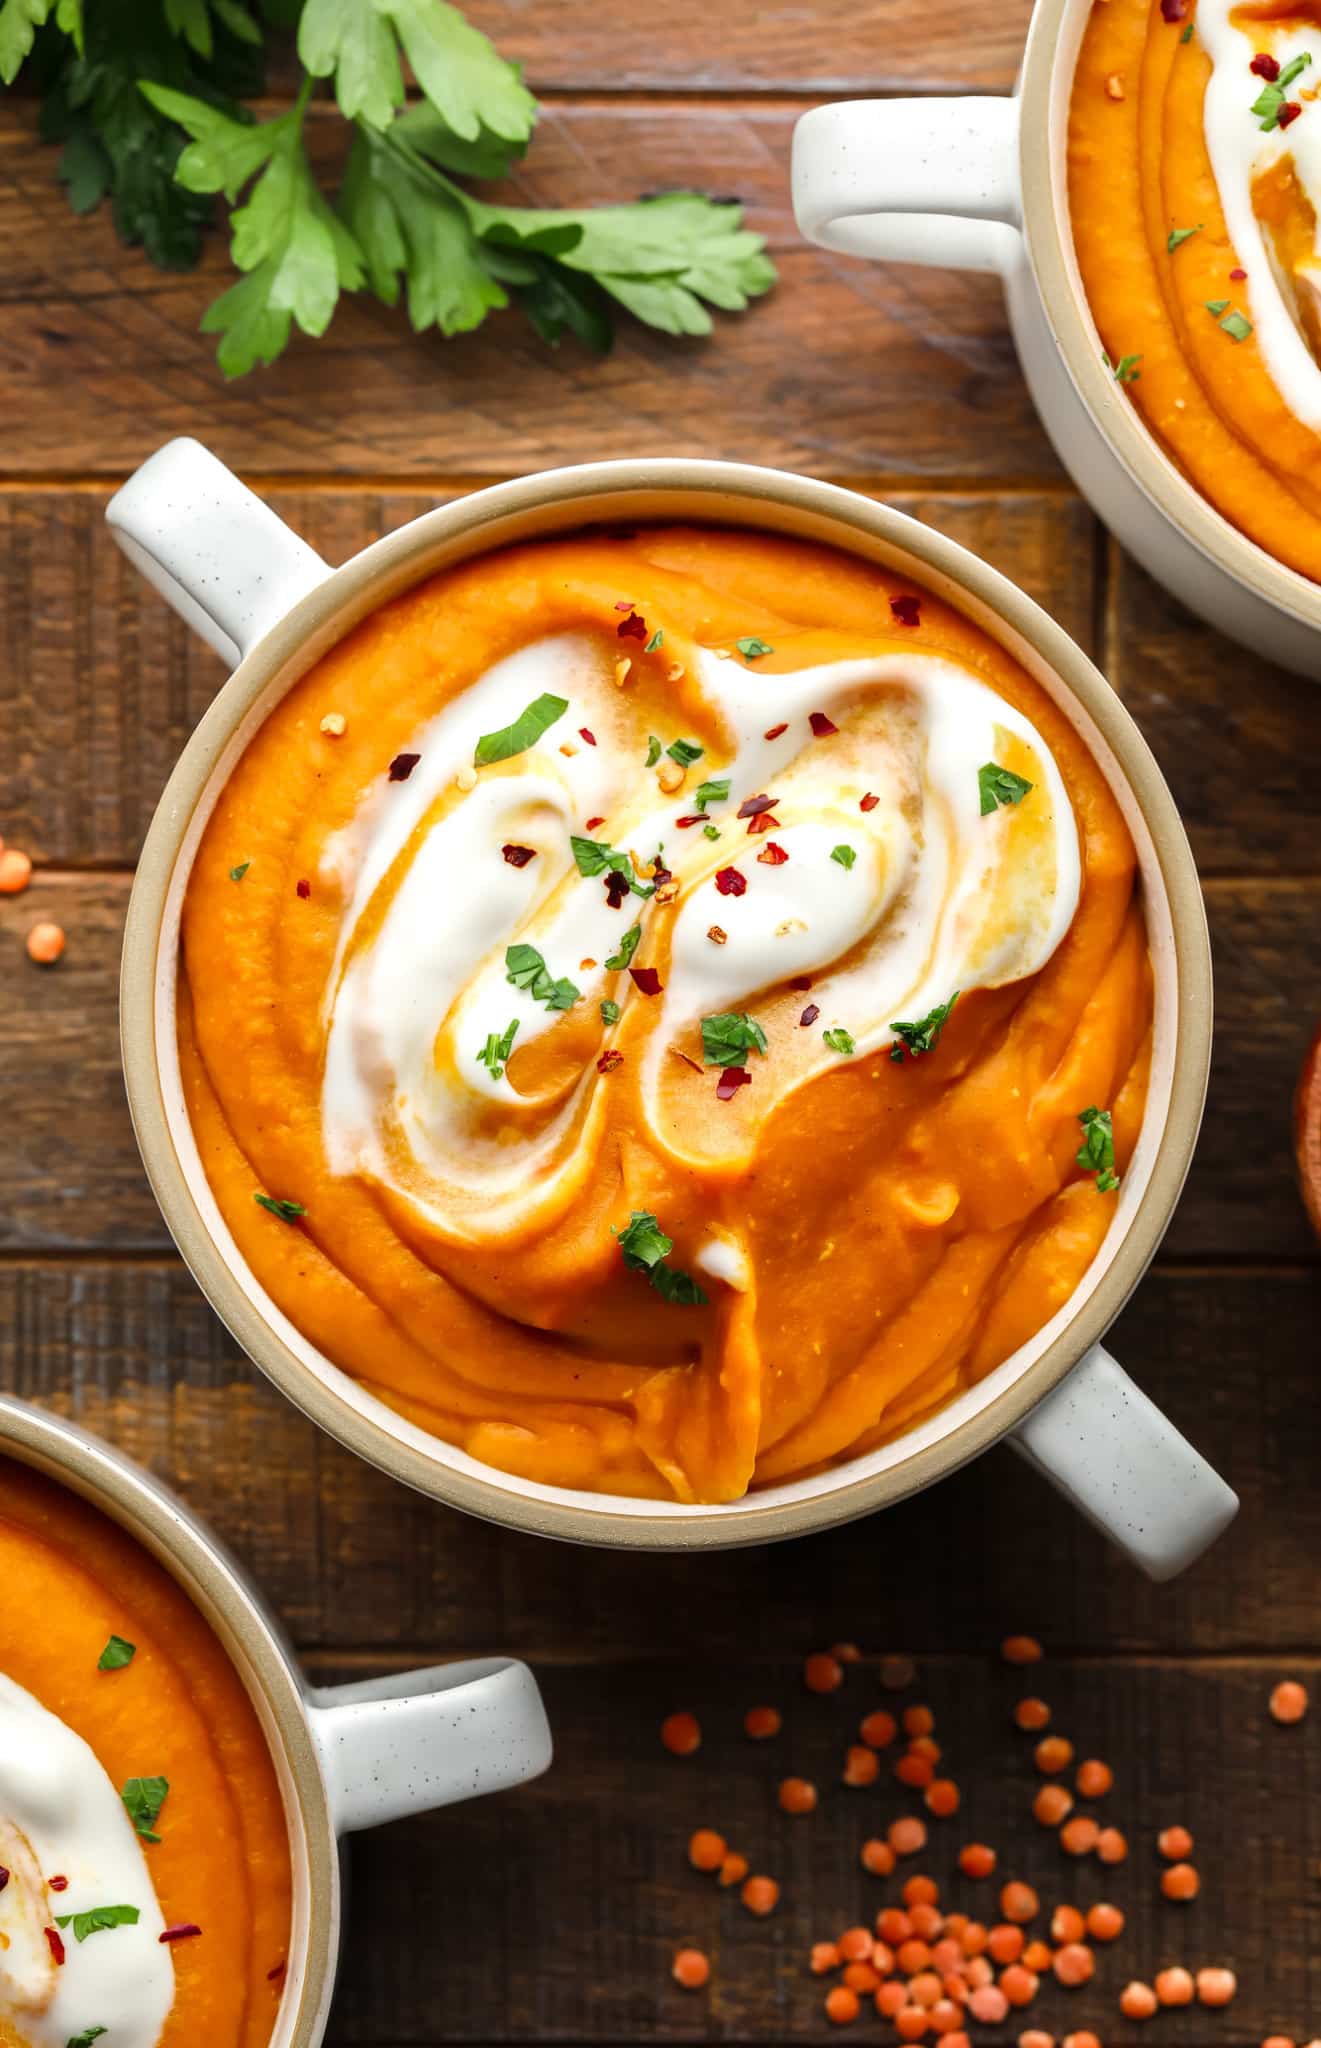 Karotten-Linsen-Suppe garniert mit veganem Joghurt und grünen Kräutern in einer weißen Suppenschüssel.